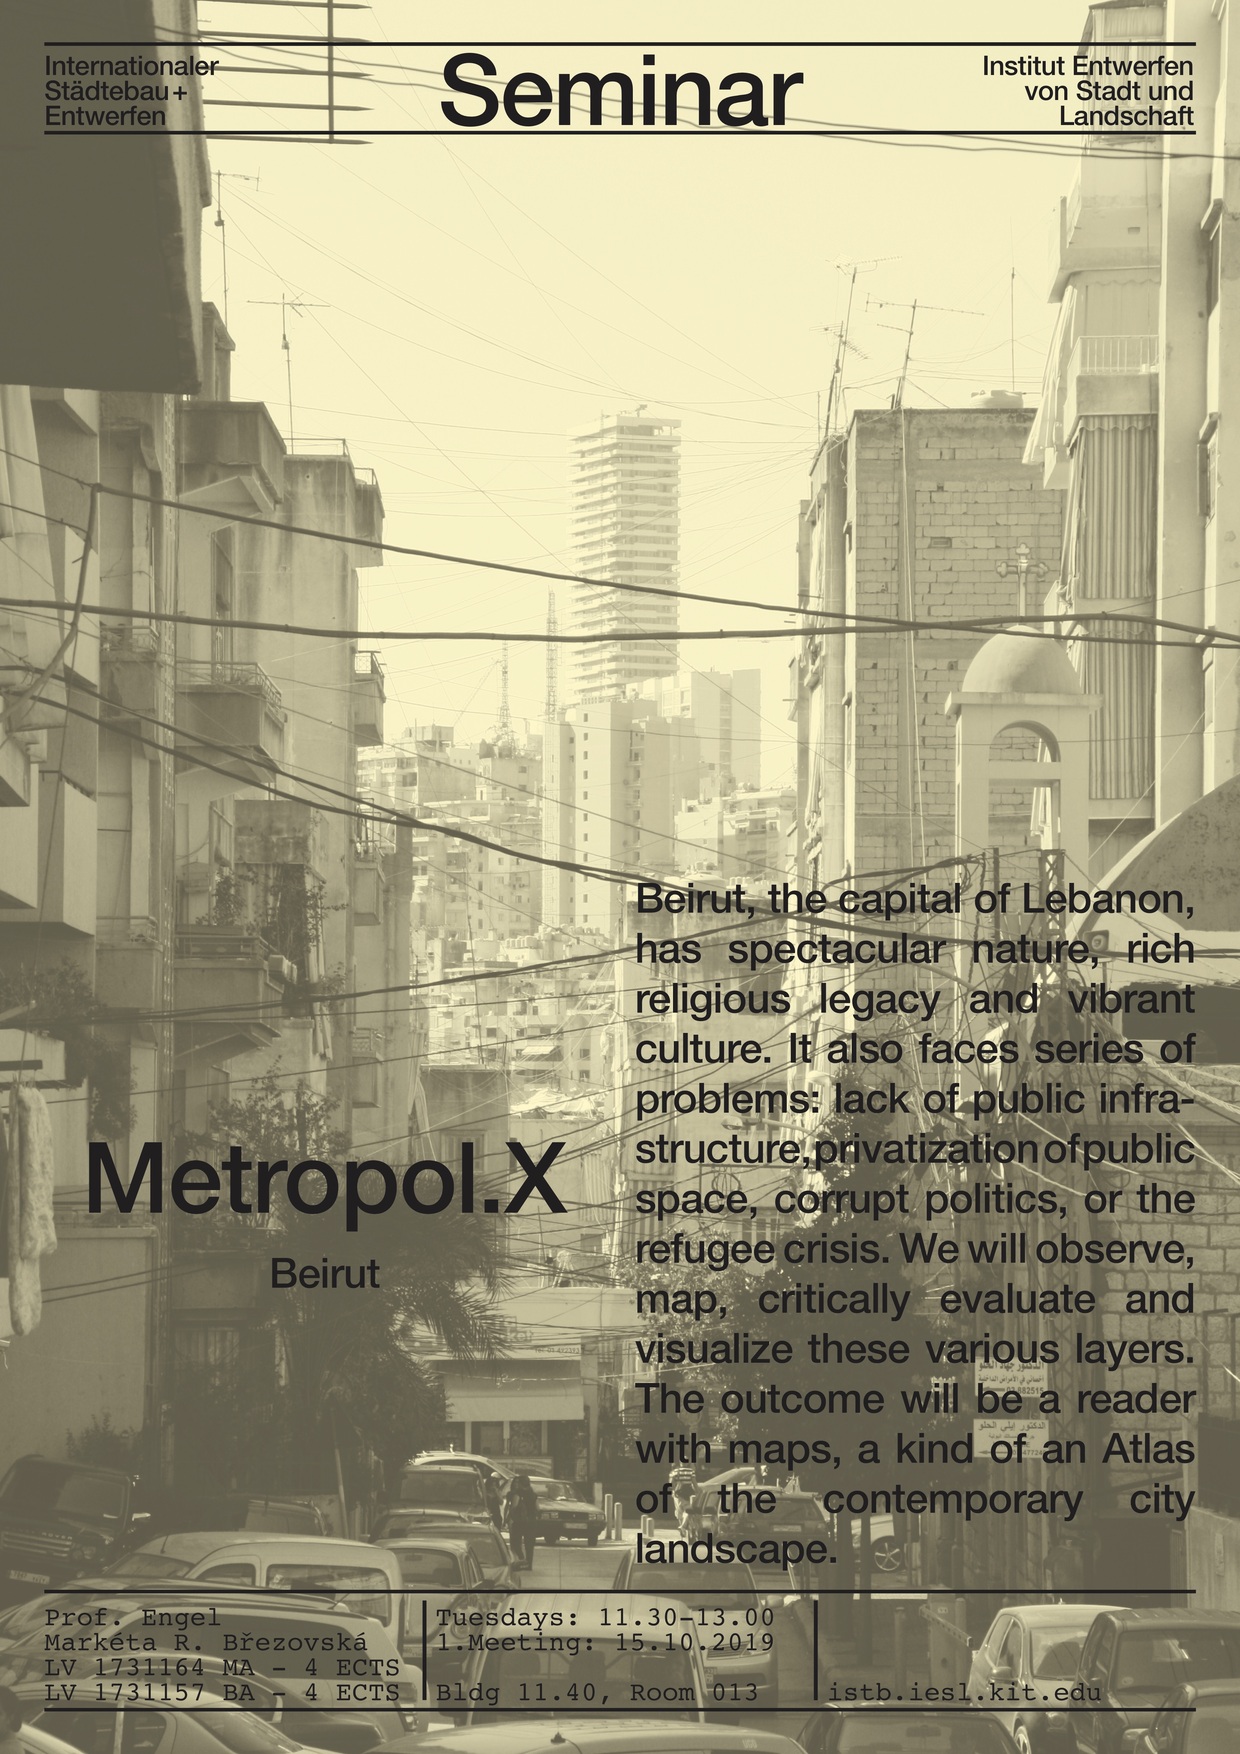 Metropol_X